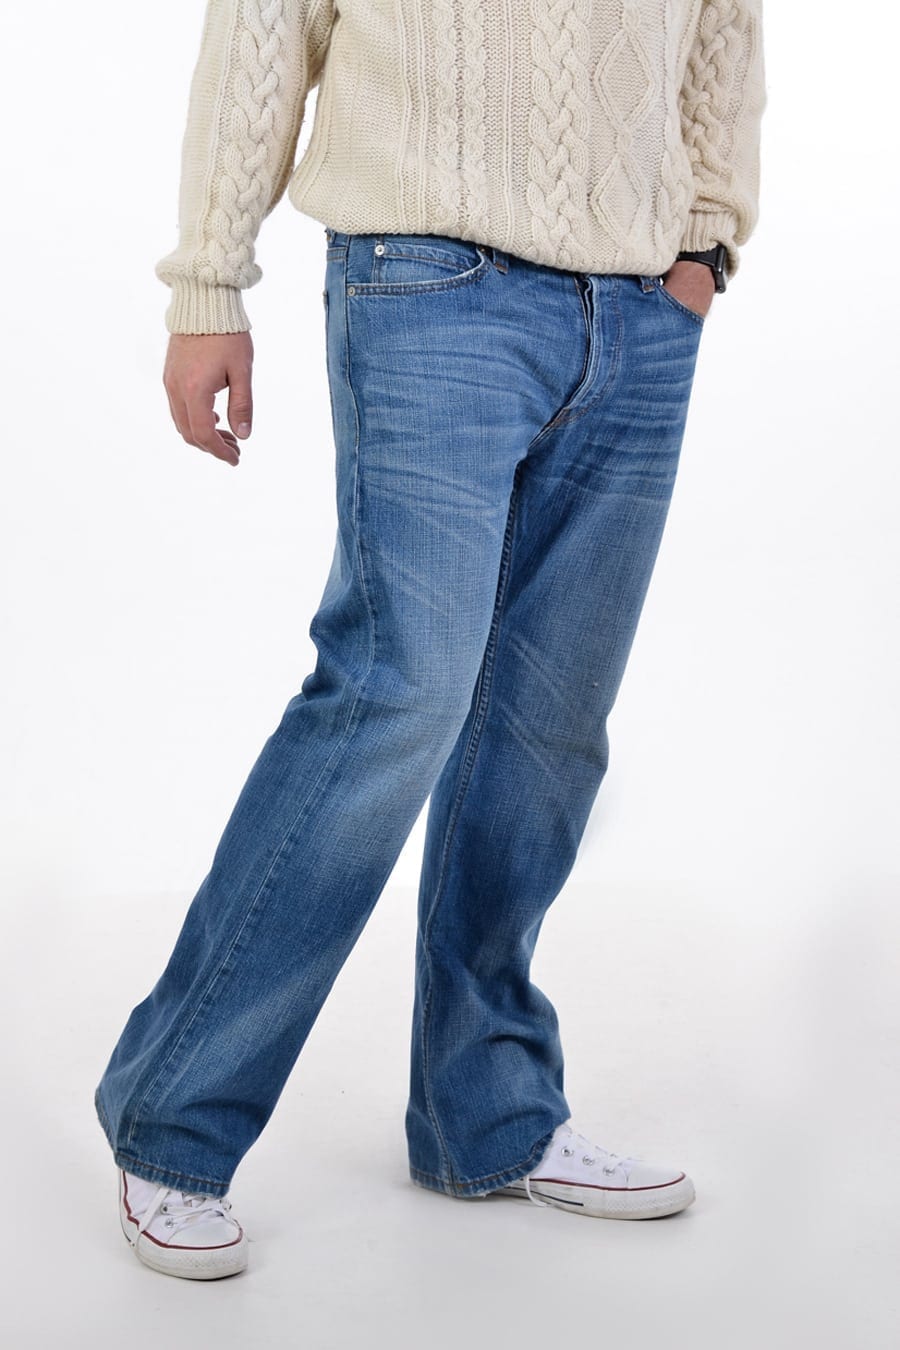 levis 507 bootcut jeans mens